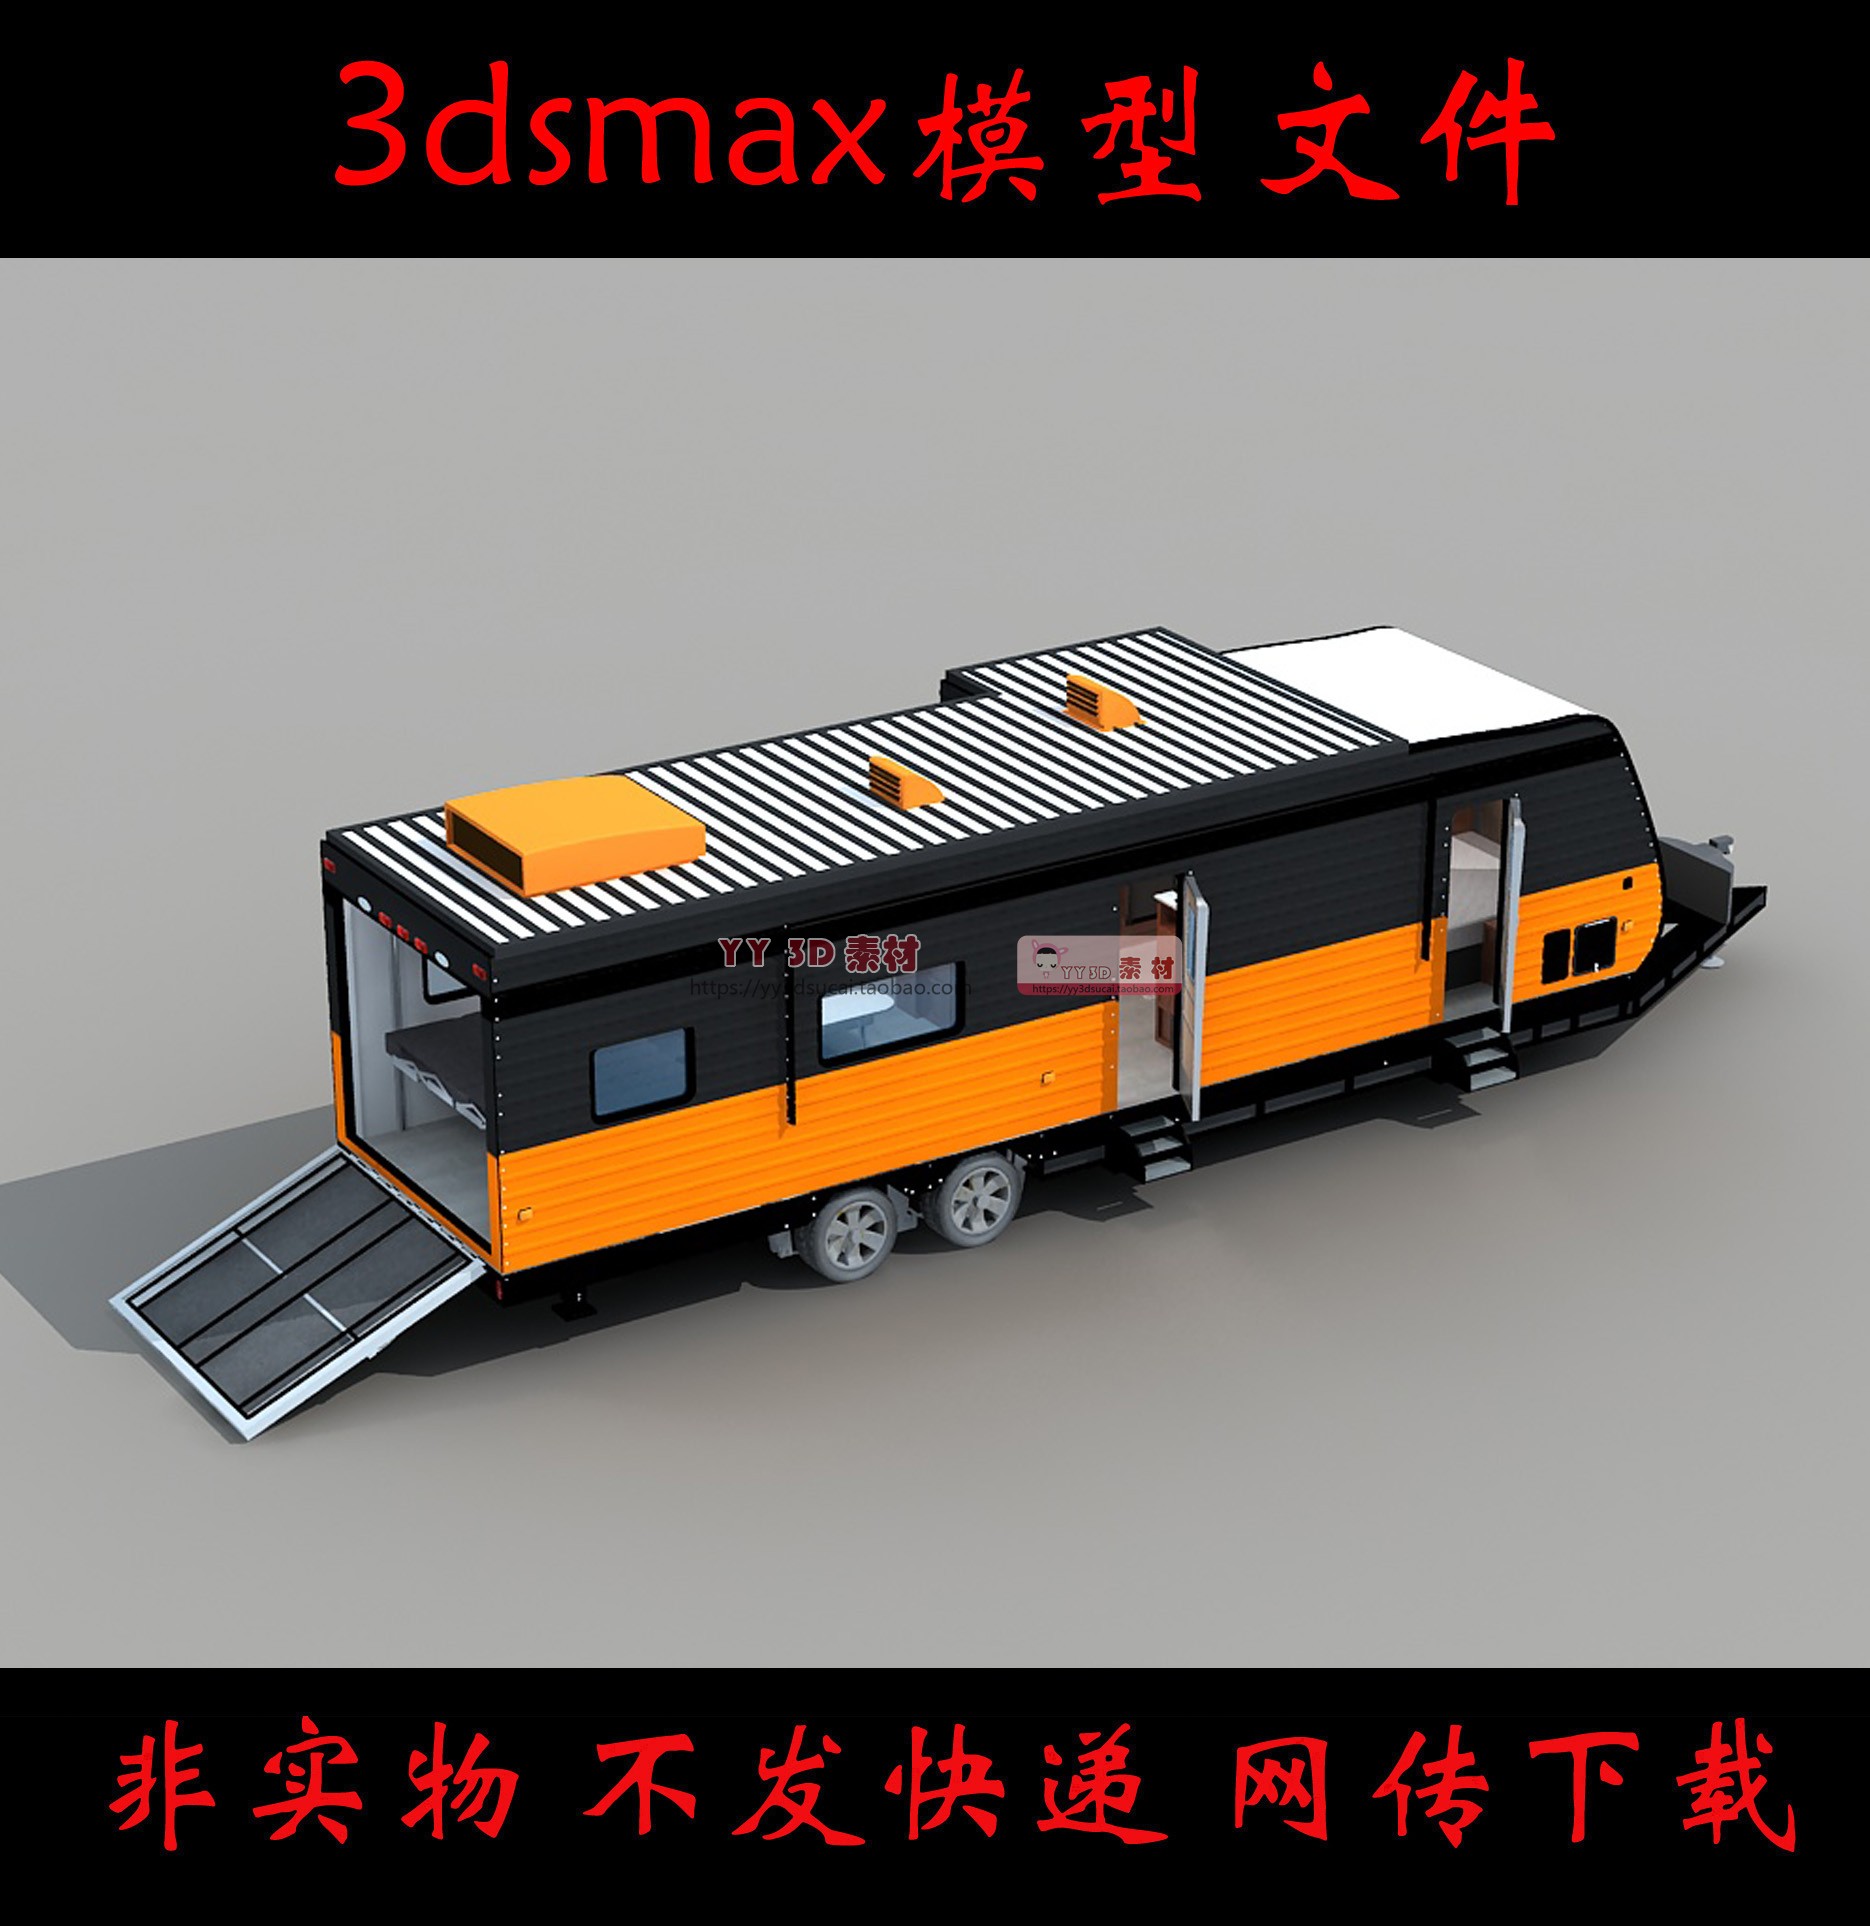 【m0367】拖挂房车3dmax模型素材房车3d模型房车max拖挂房车内部